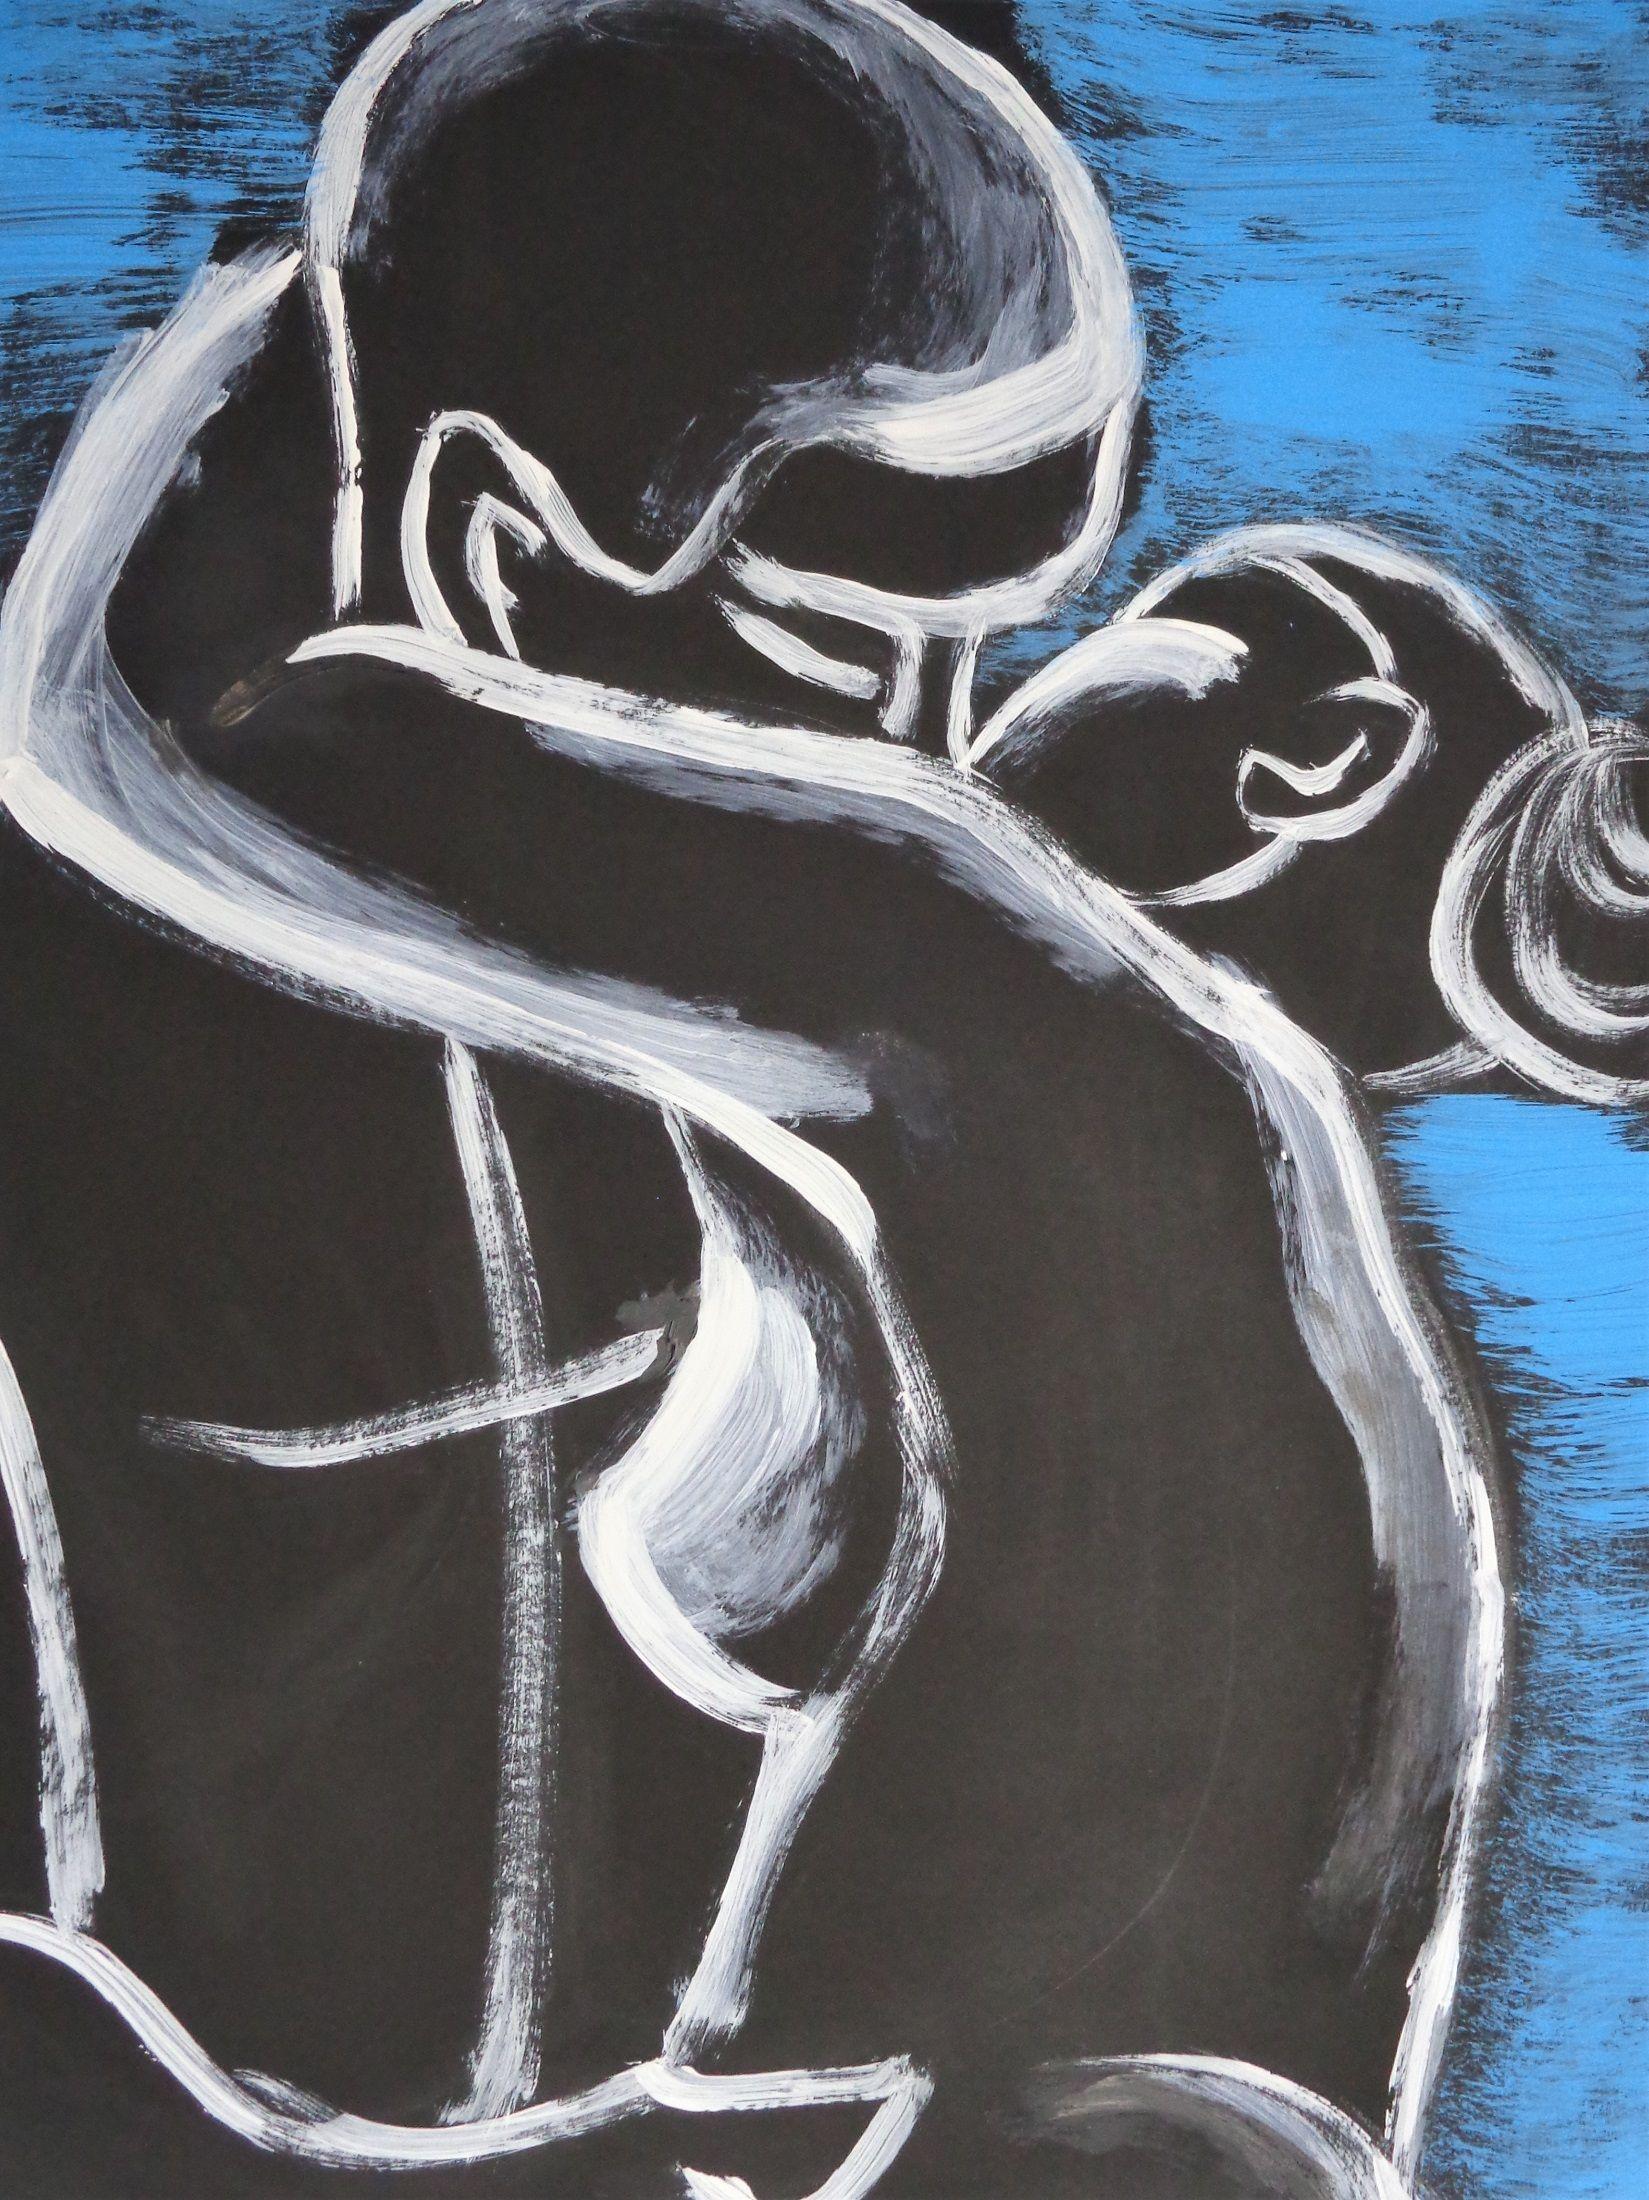 Original halb-abstraktes figuratives Gemälde auf schwarzem Karton, ungerahmt. Spontanes Kunstwerk aus blauen und weißen Acrylfarben. Emotionales und sinnliches Bild eines verliebten Paares in Umarmung, Teil einer neuen Serie. Größe 51 cm x 63 cm